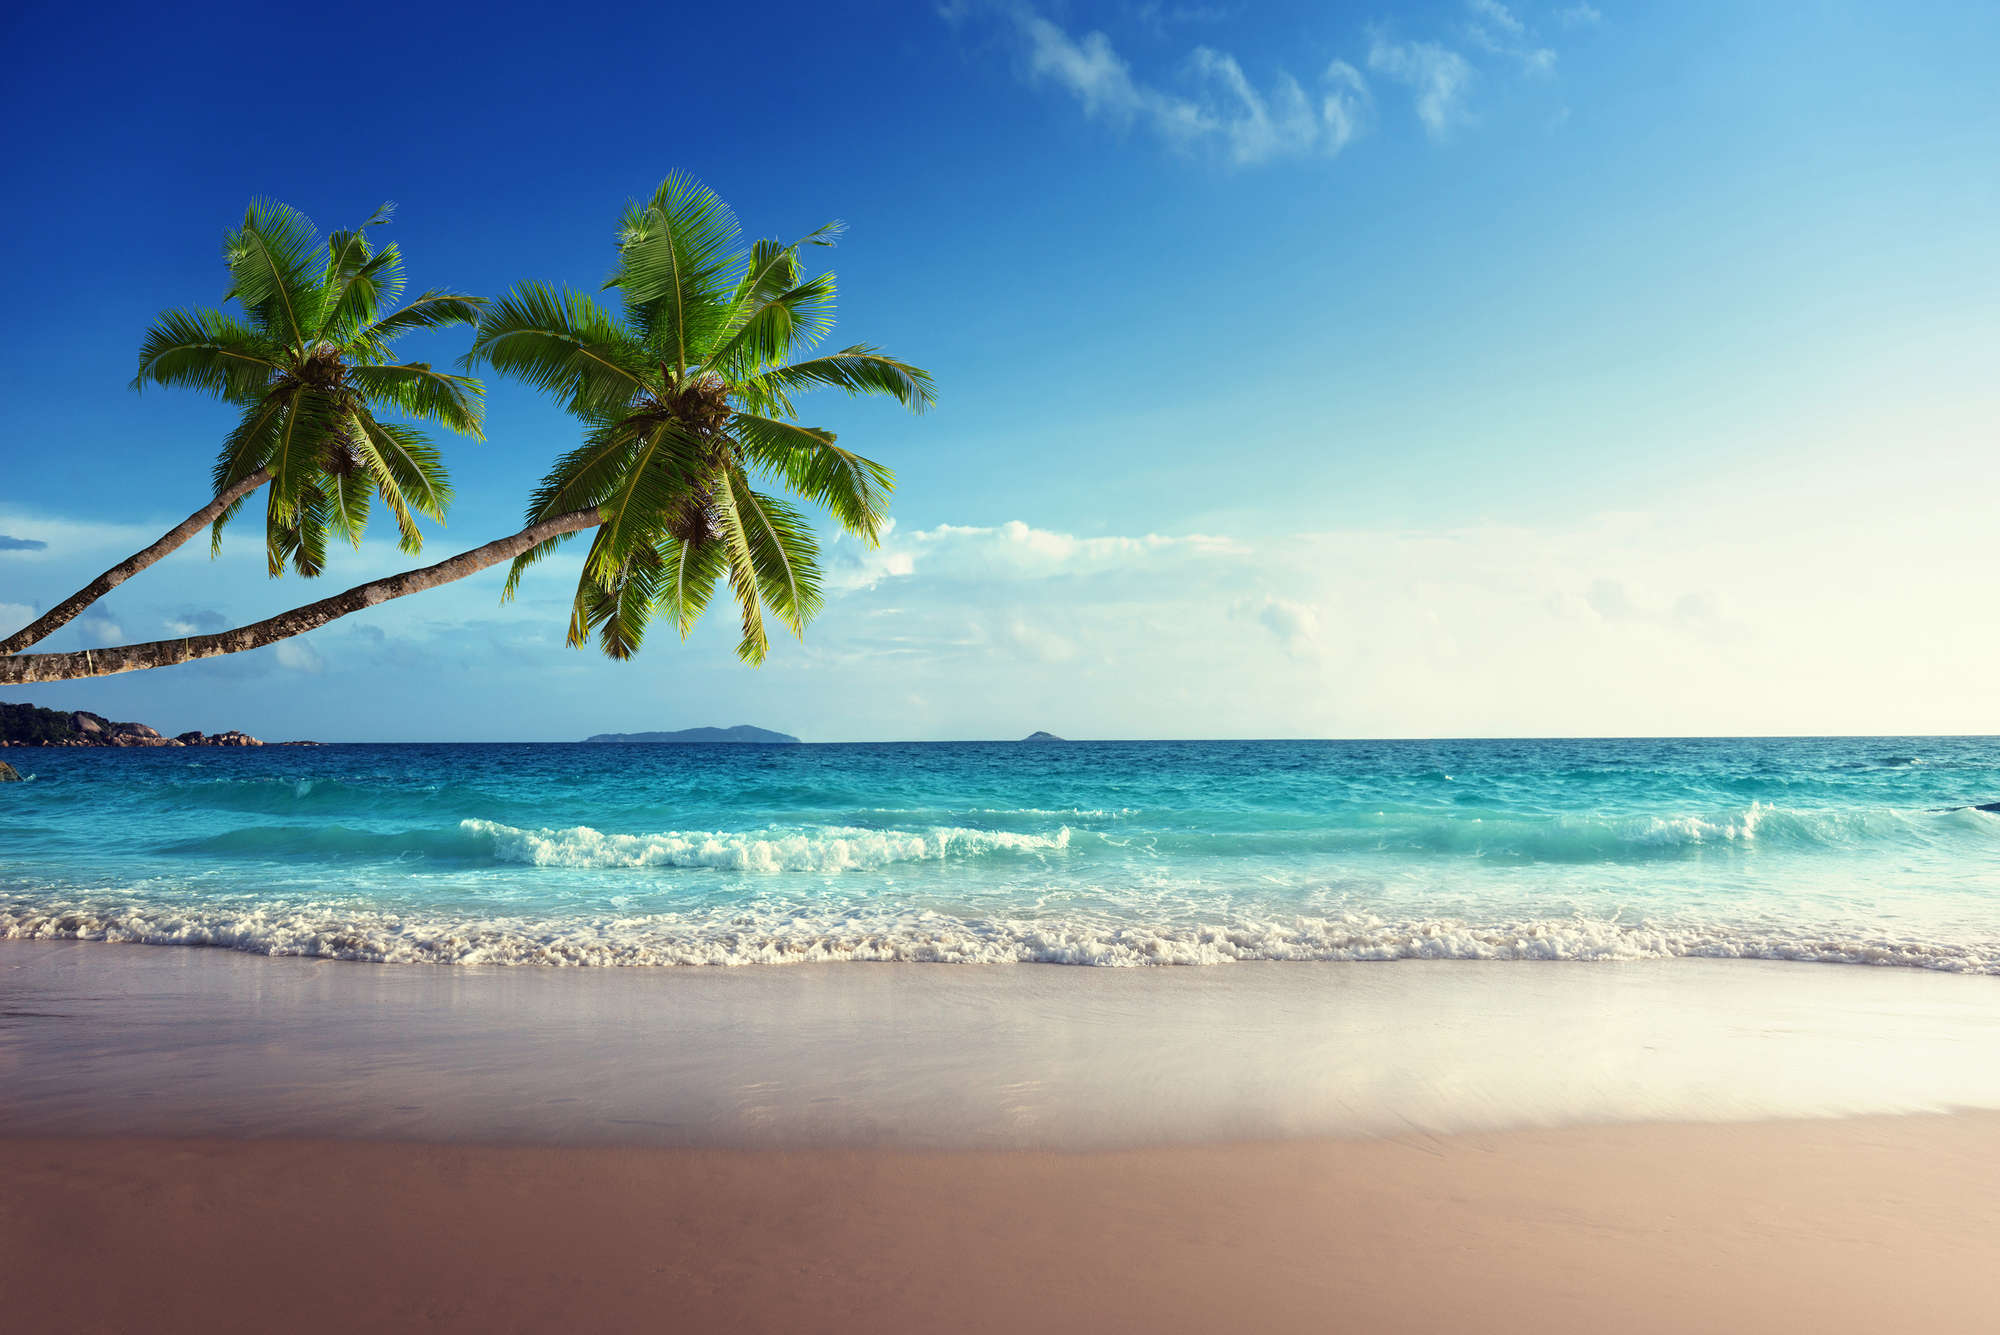             Fotomurali di spiaggia con due palme sulla costa su vello liscio in madreperla
        